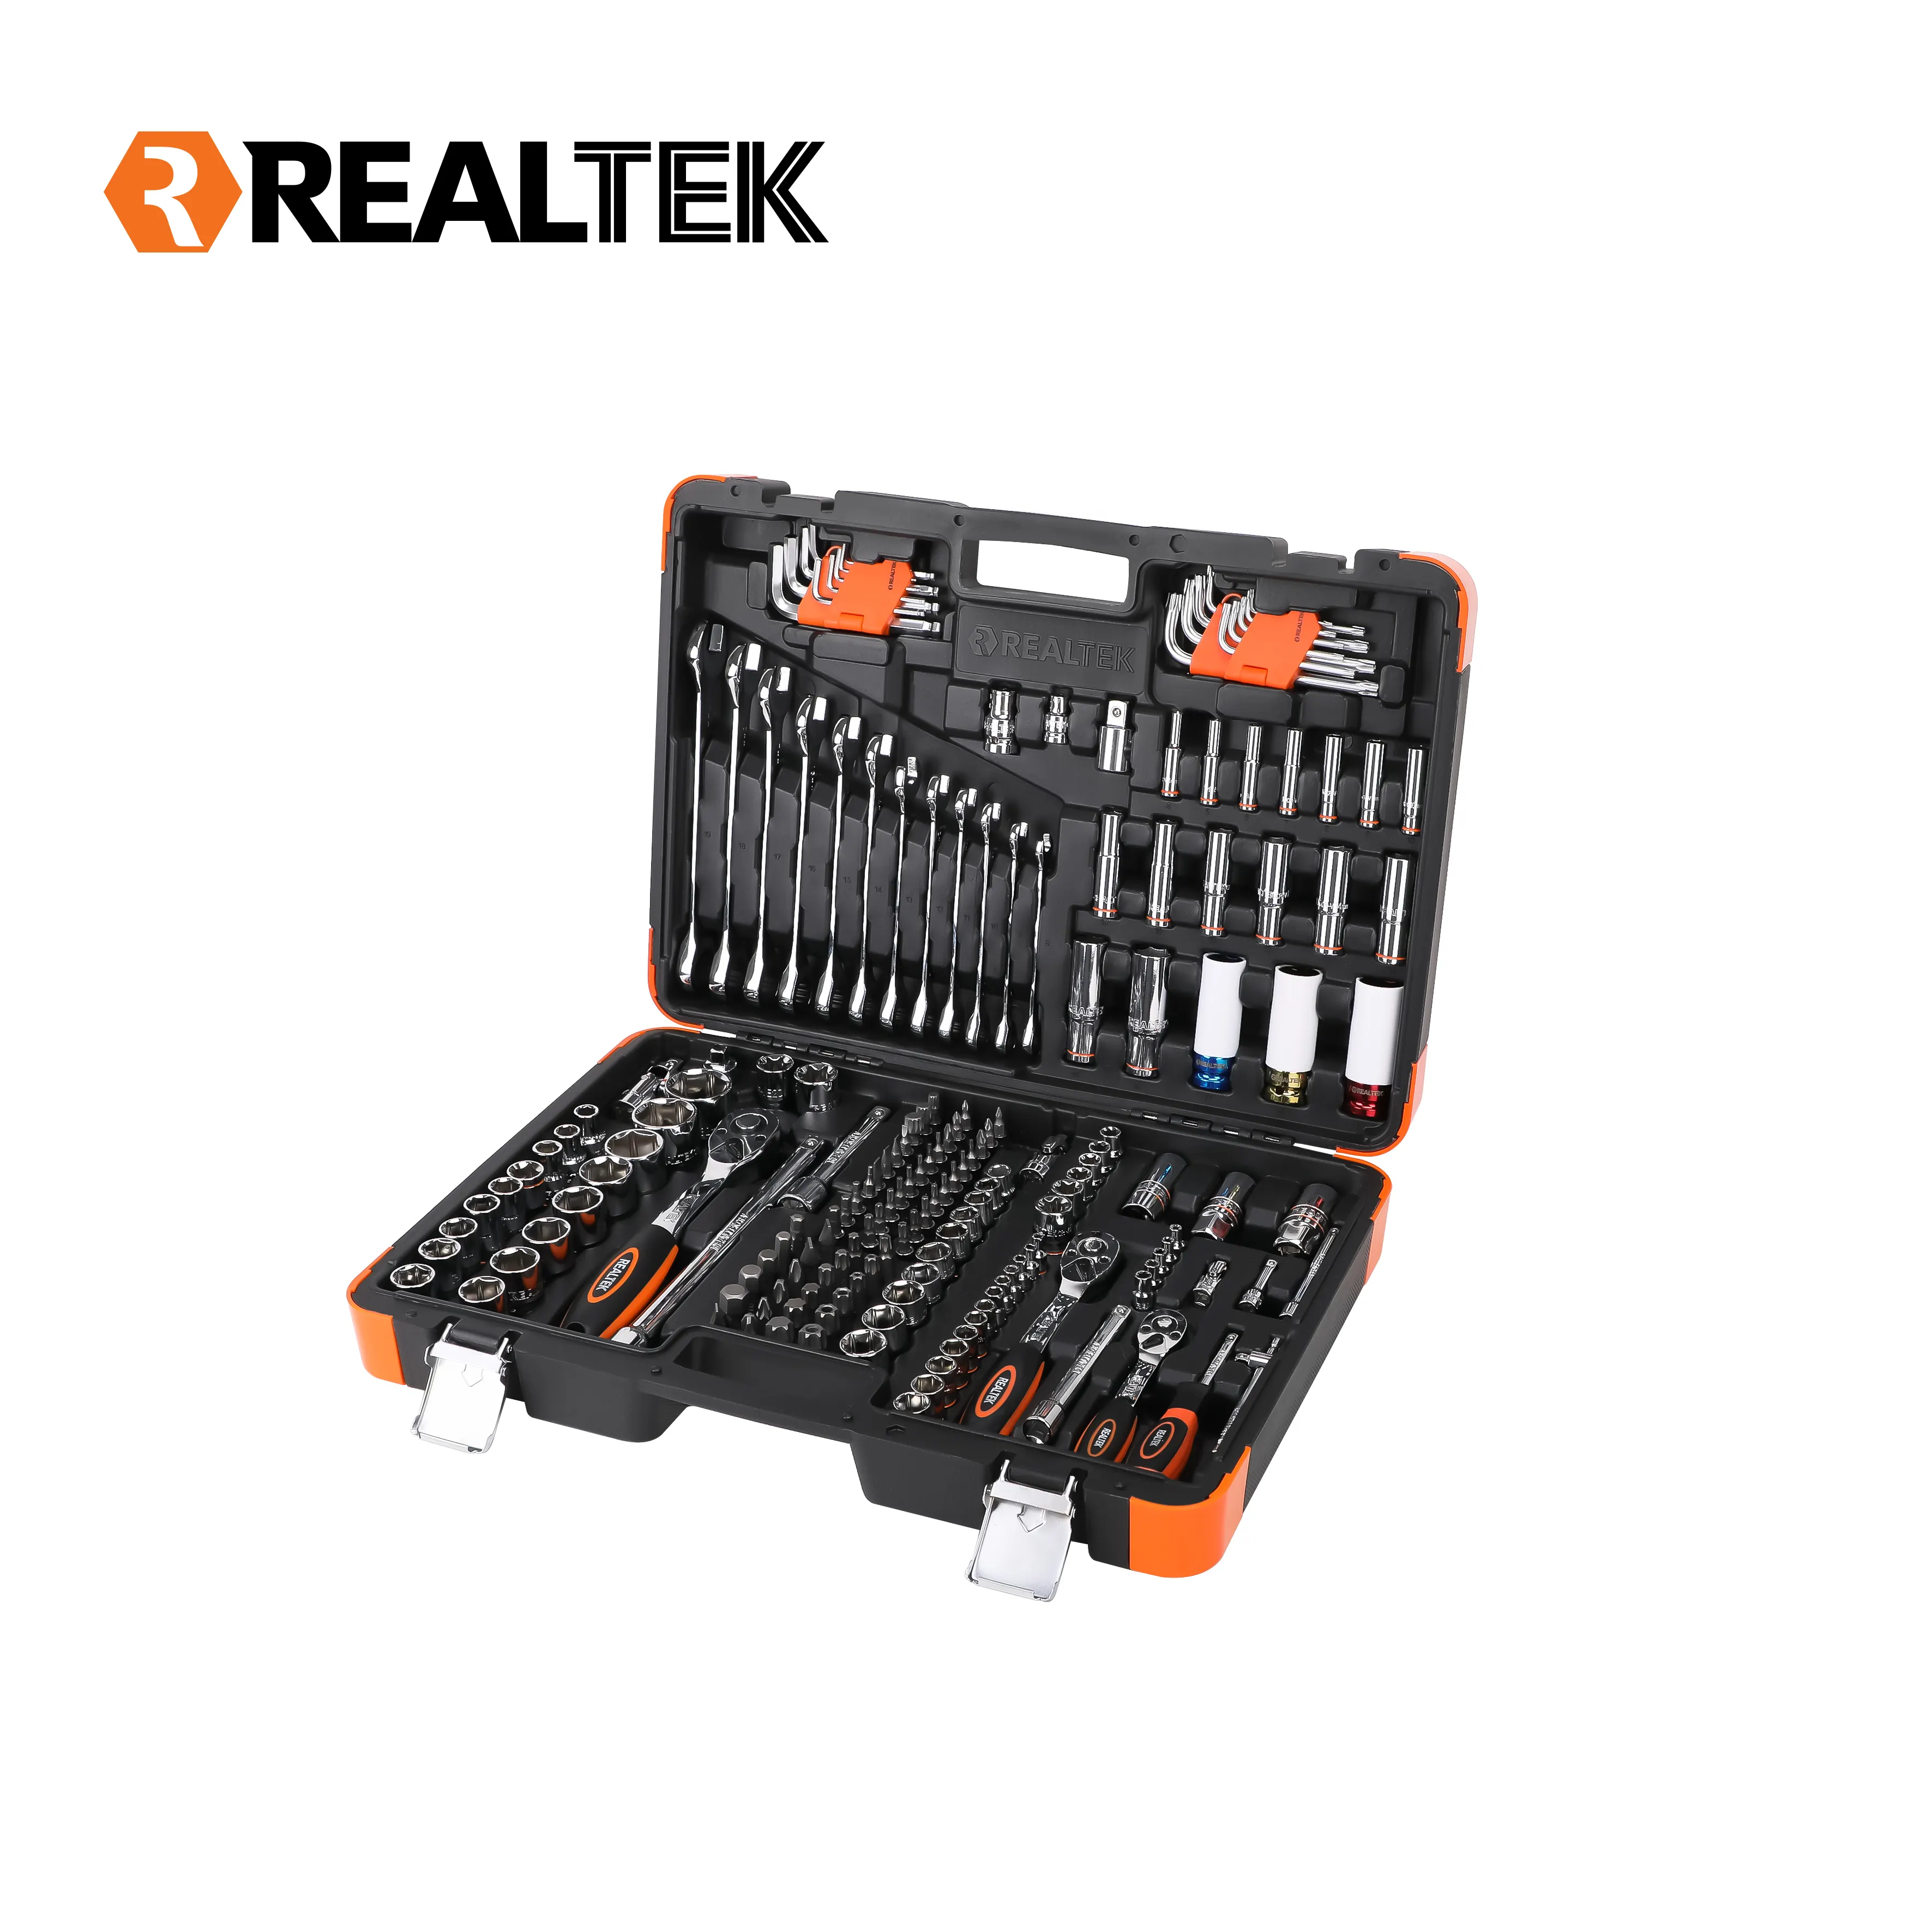 Realtek Material de alta qualidade 50x36.8x10cm G.W. 24.6 Conjuntos de caixa de ferramentas mecânica combinada para reparo de automóveis